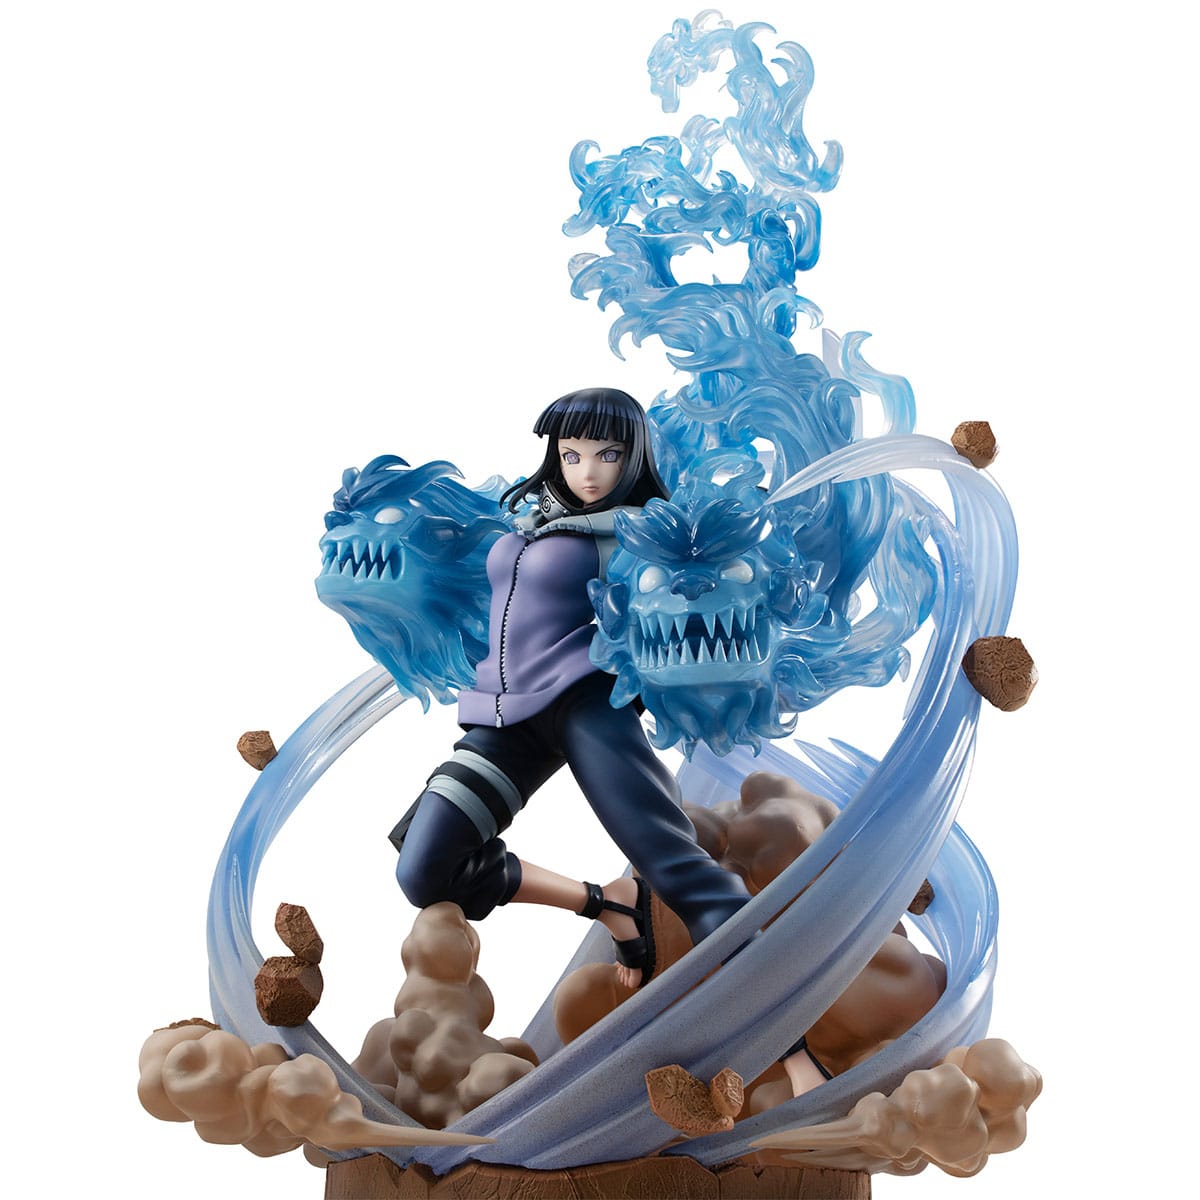 NARUTO SHIPPUDEN - Figurine Hinata Hyuga - GALS DX Ver.3 - MEGAHOUSE